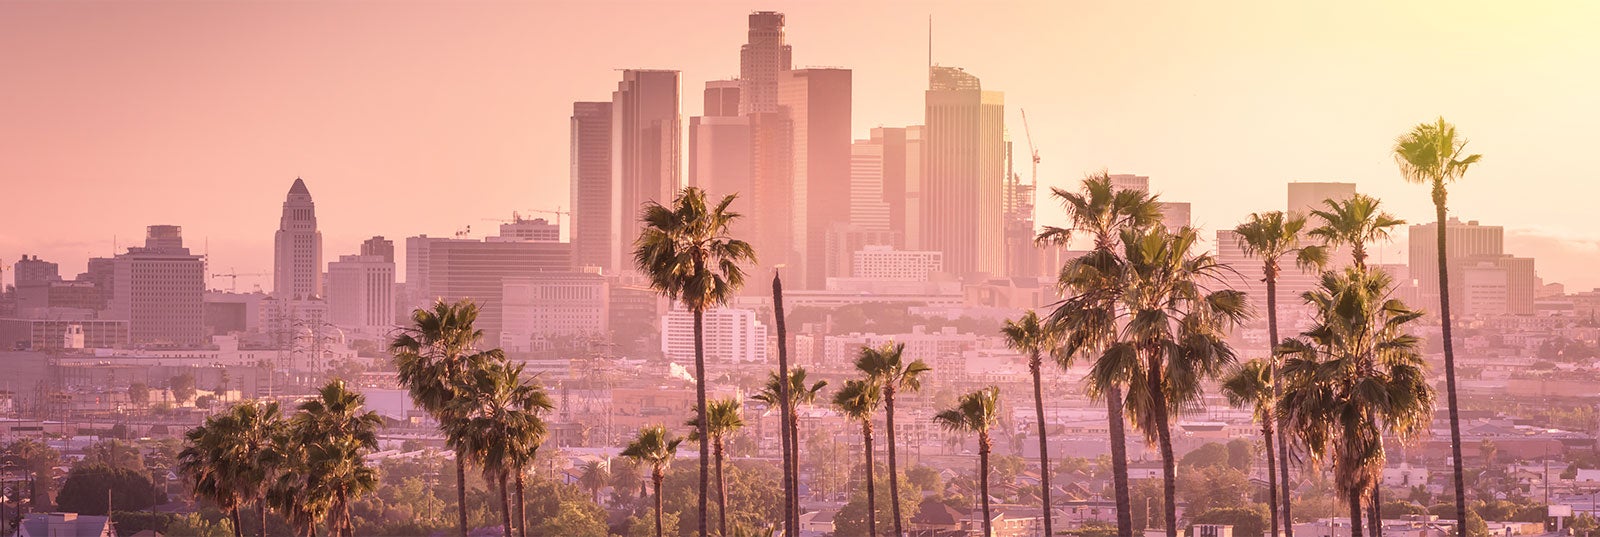 Los Angeles - Guia de viagens e turismo Tudo sobre Los Angeles